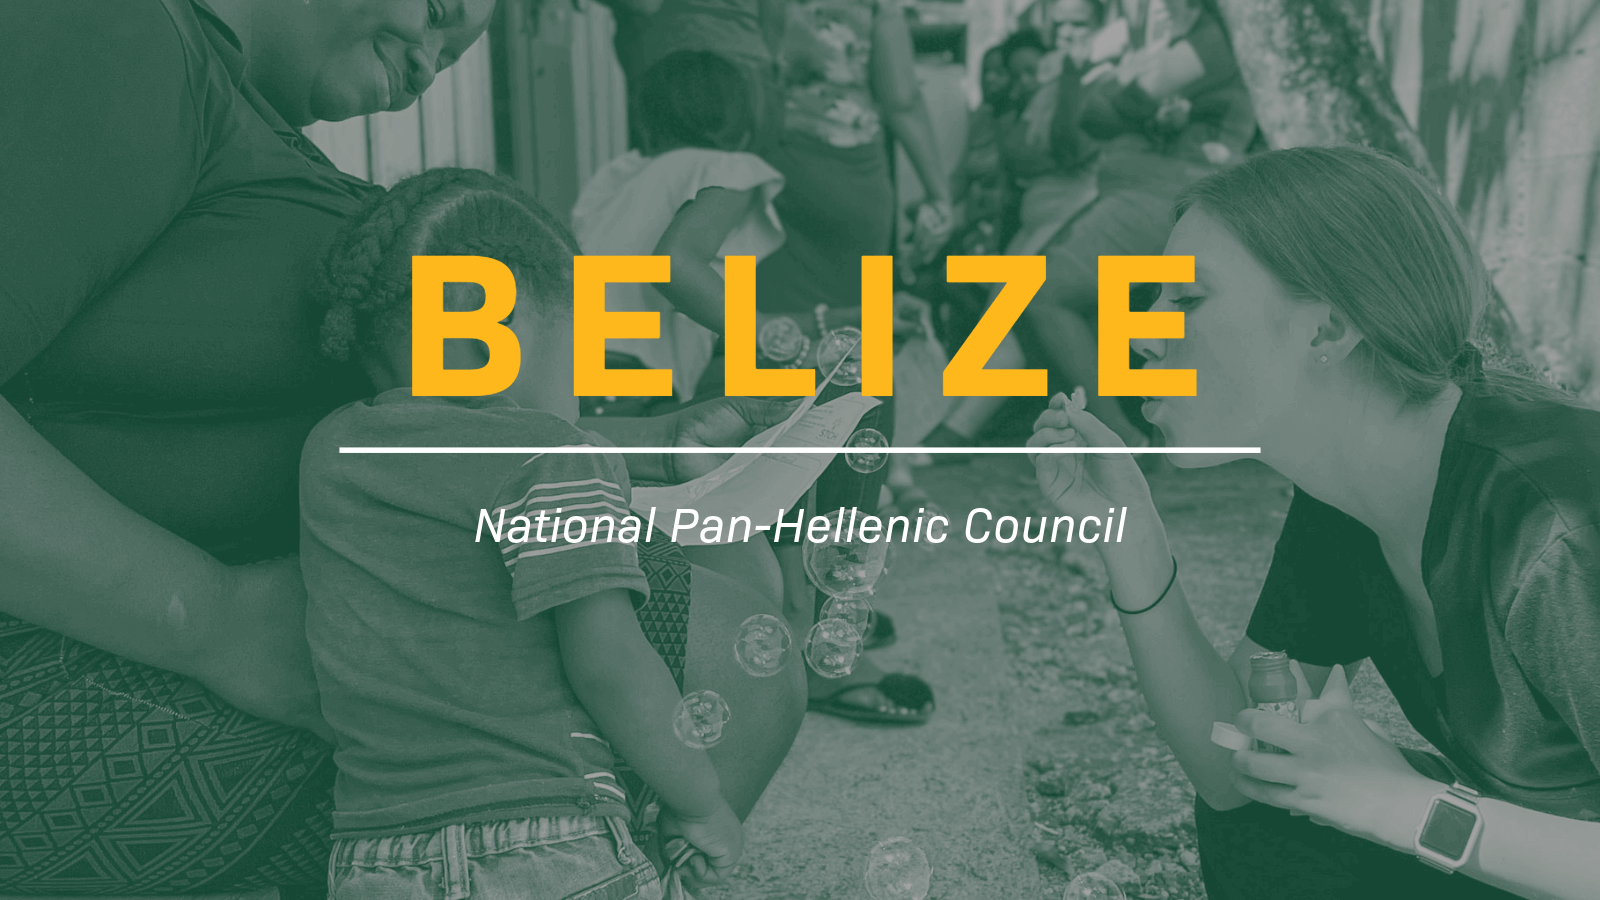 Belize National Pan-Hellenic Council